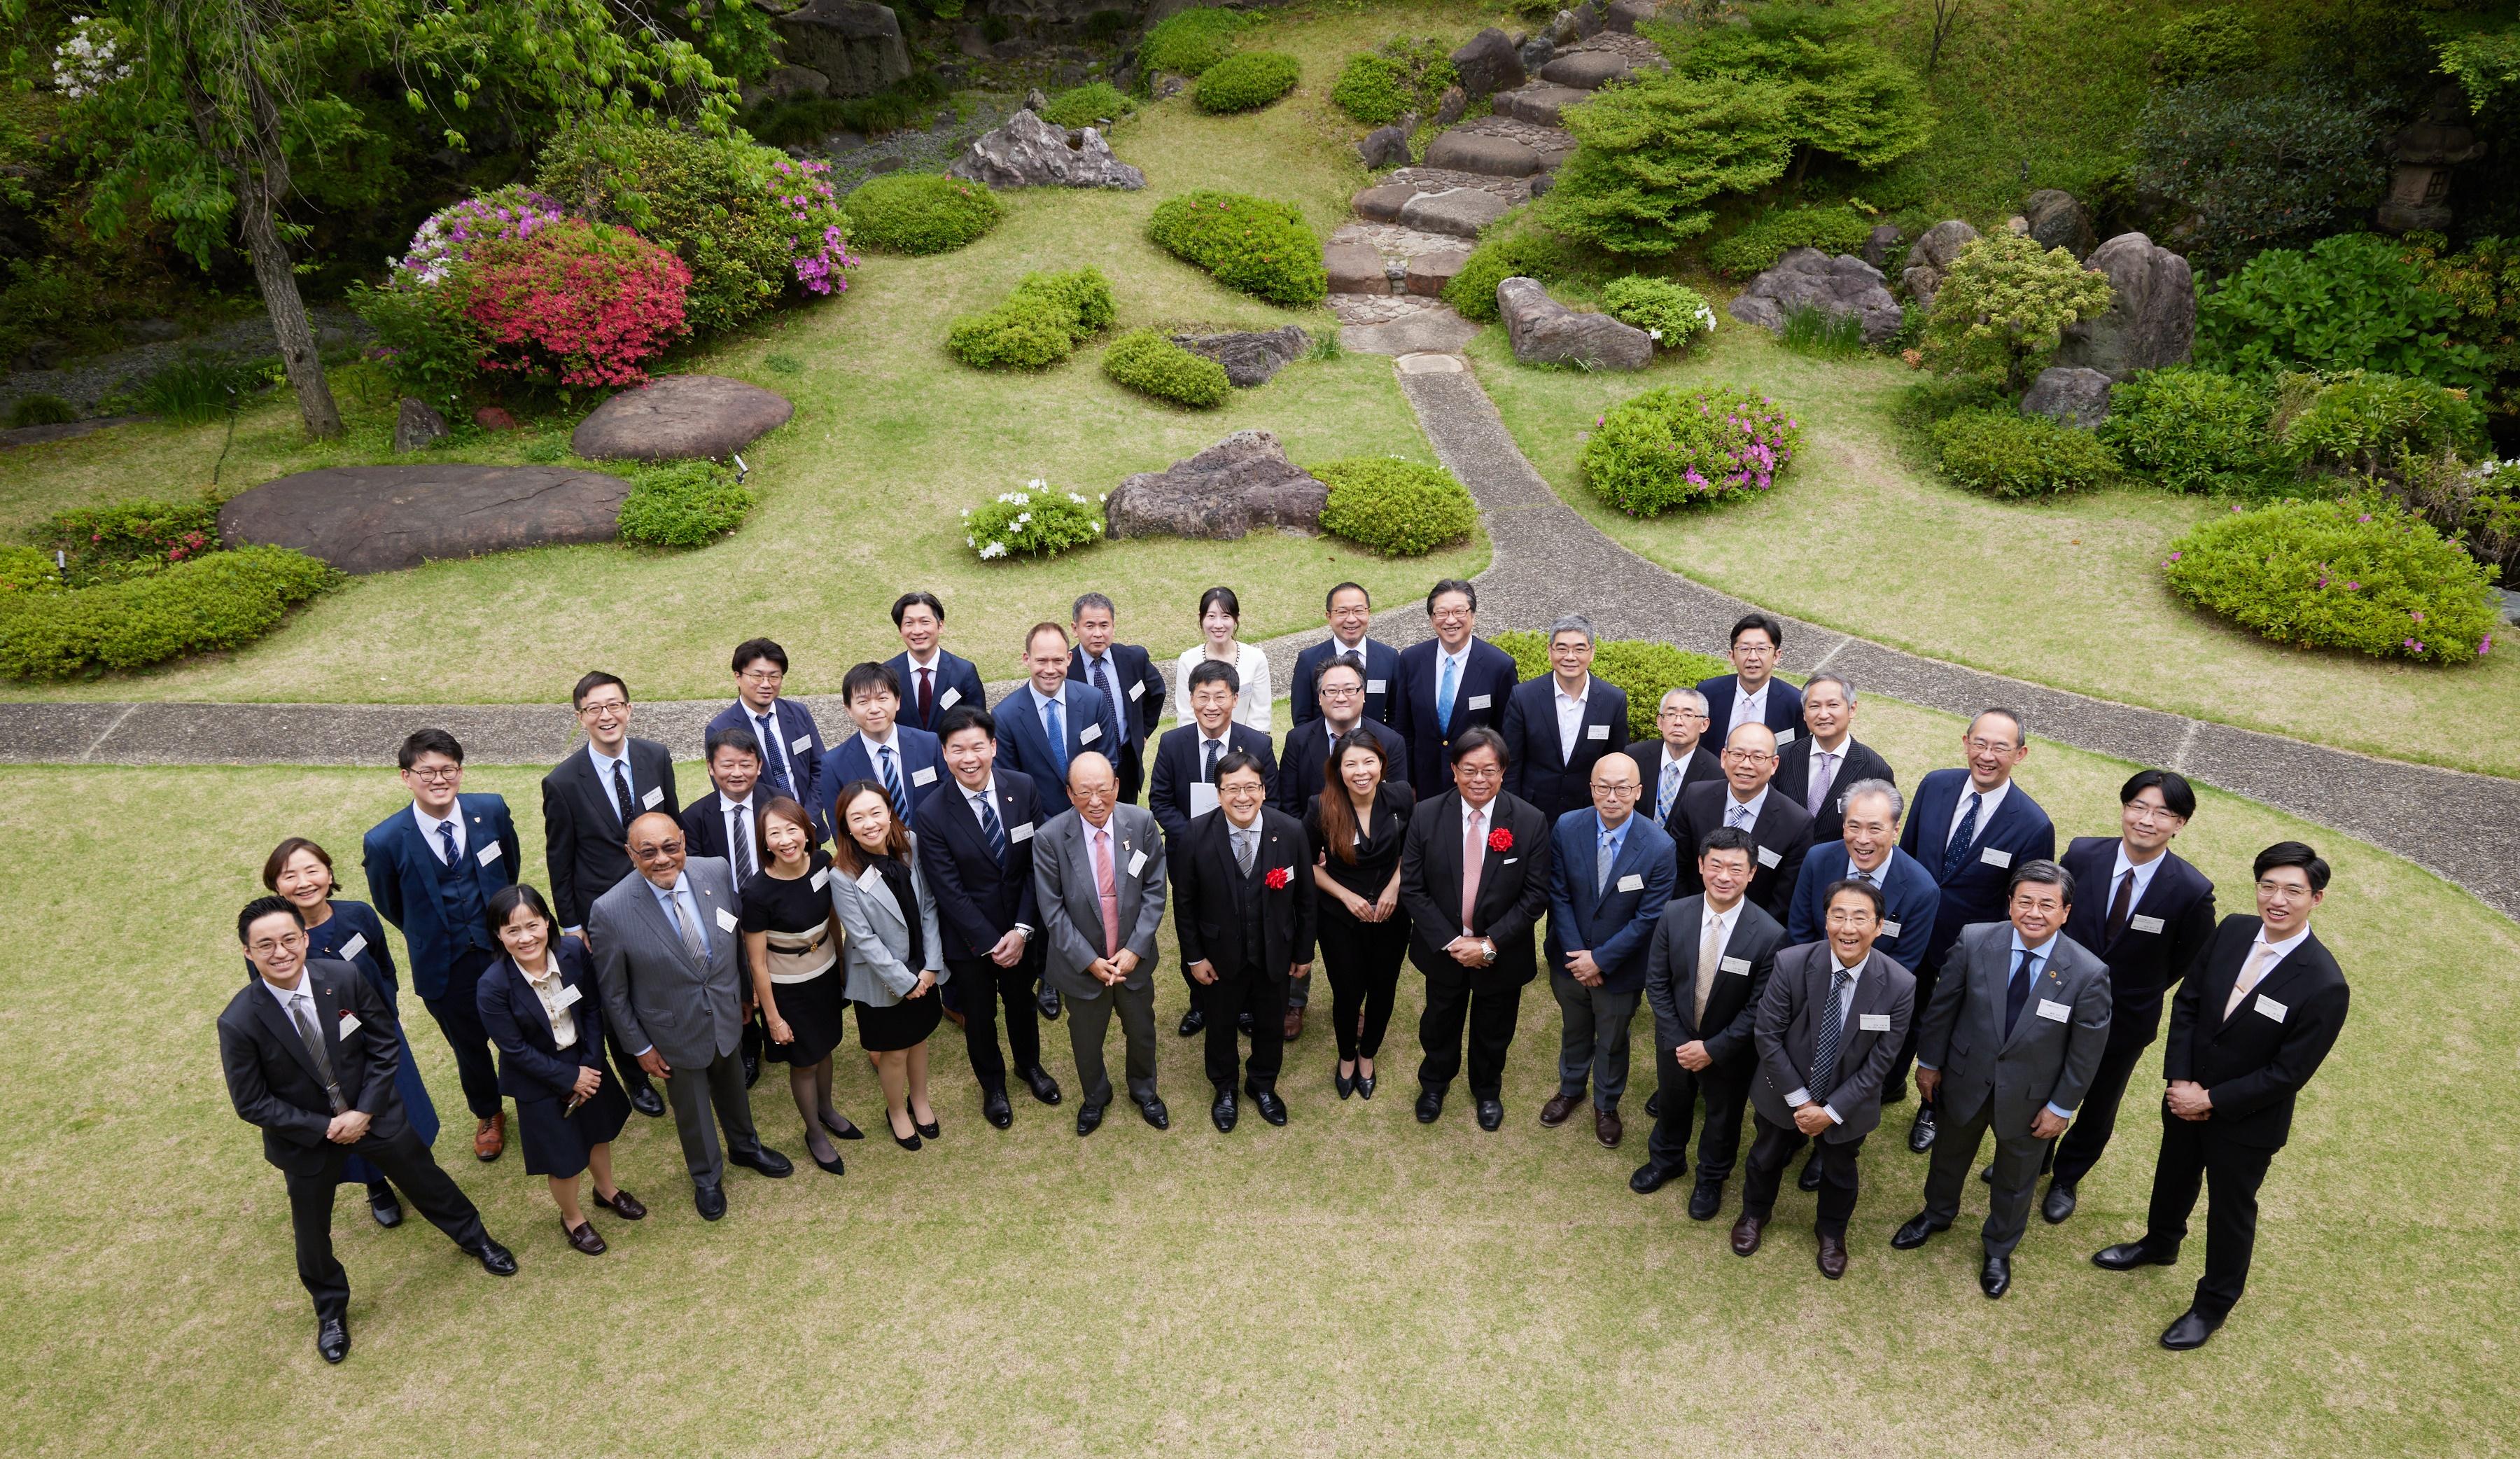 香港駐東京經濟貿易辦事處和香港律師會今日（四月二十六日）在日本東京合辦午餐會。出席者包括來自日本的商界領袖、法律界人士，以及香港律師會的代表。